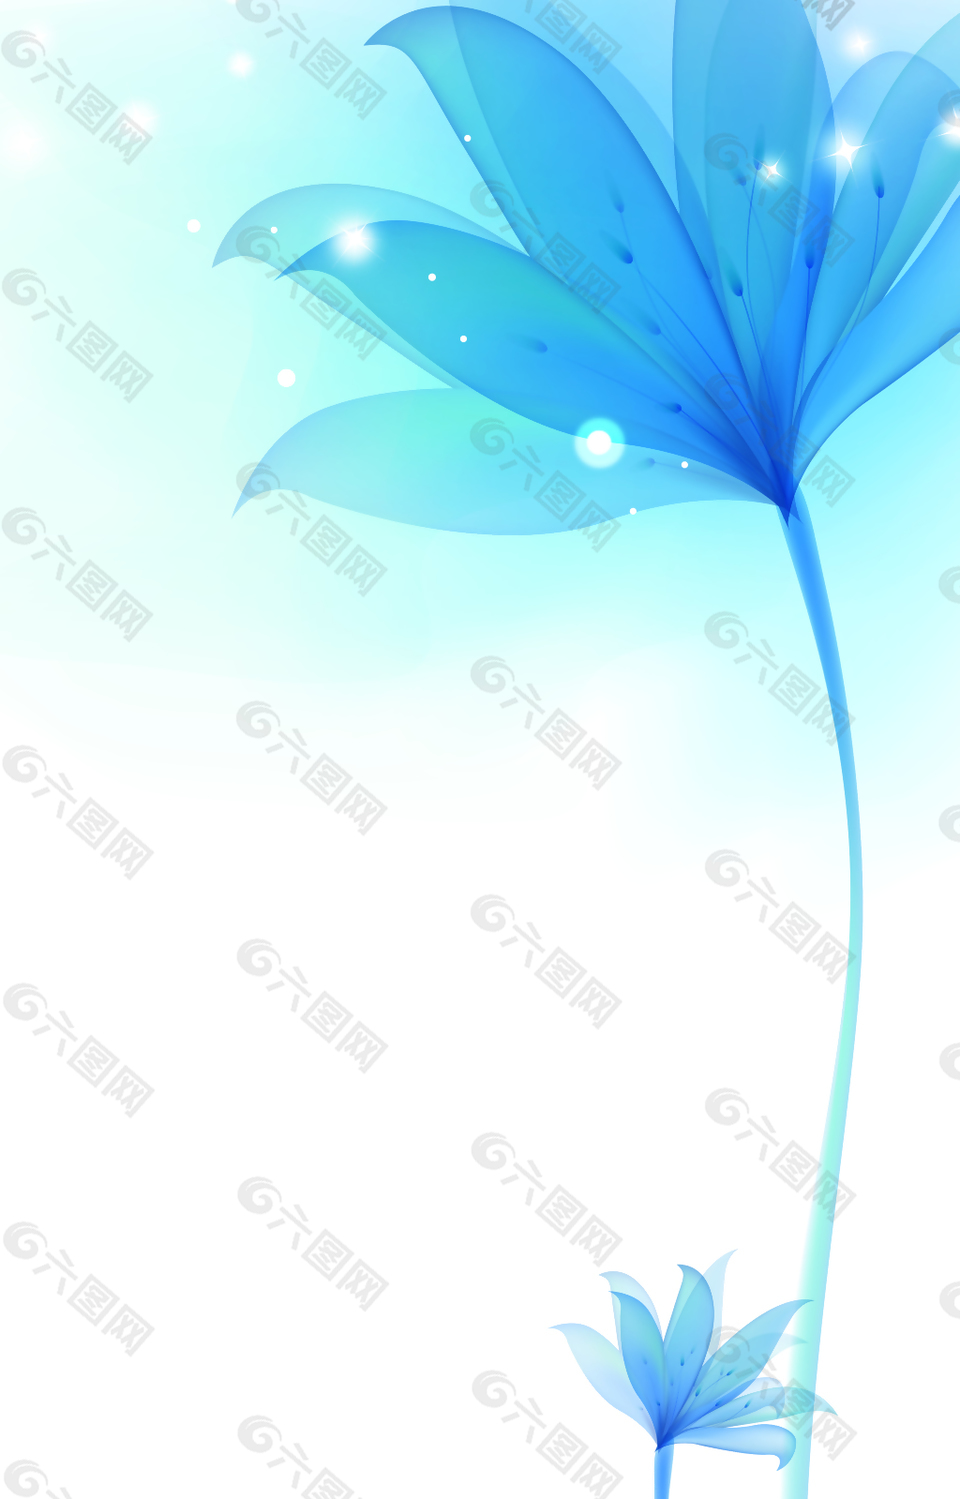 蓝色花朵下的光点背景素材